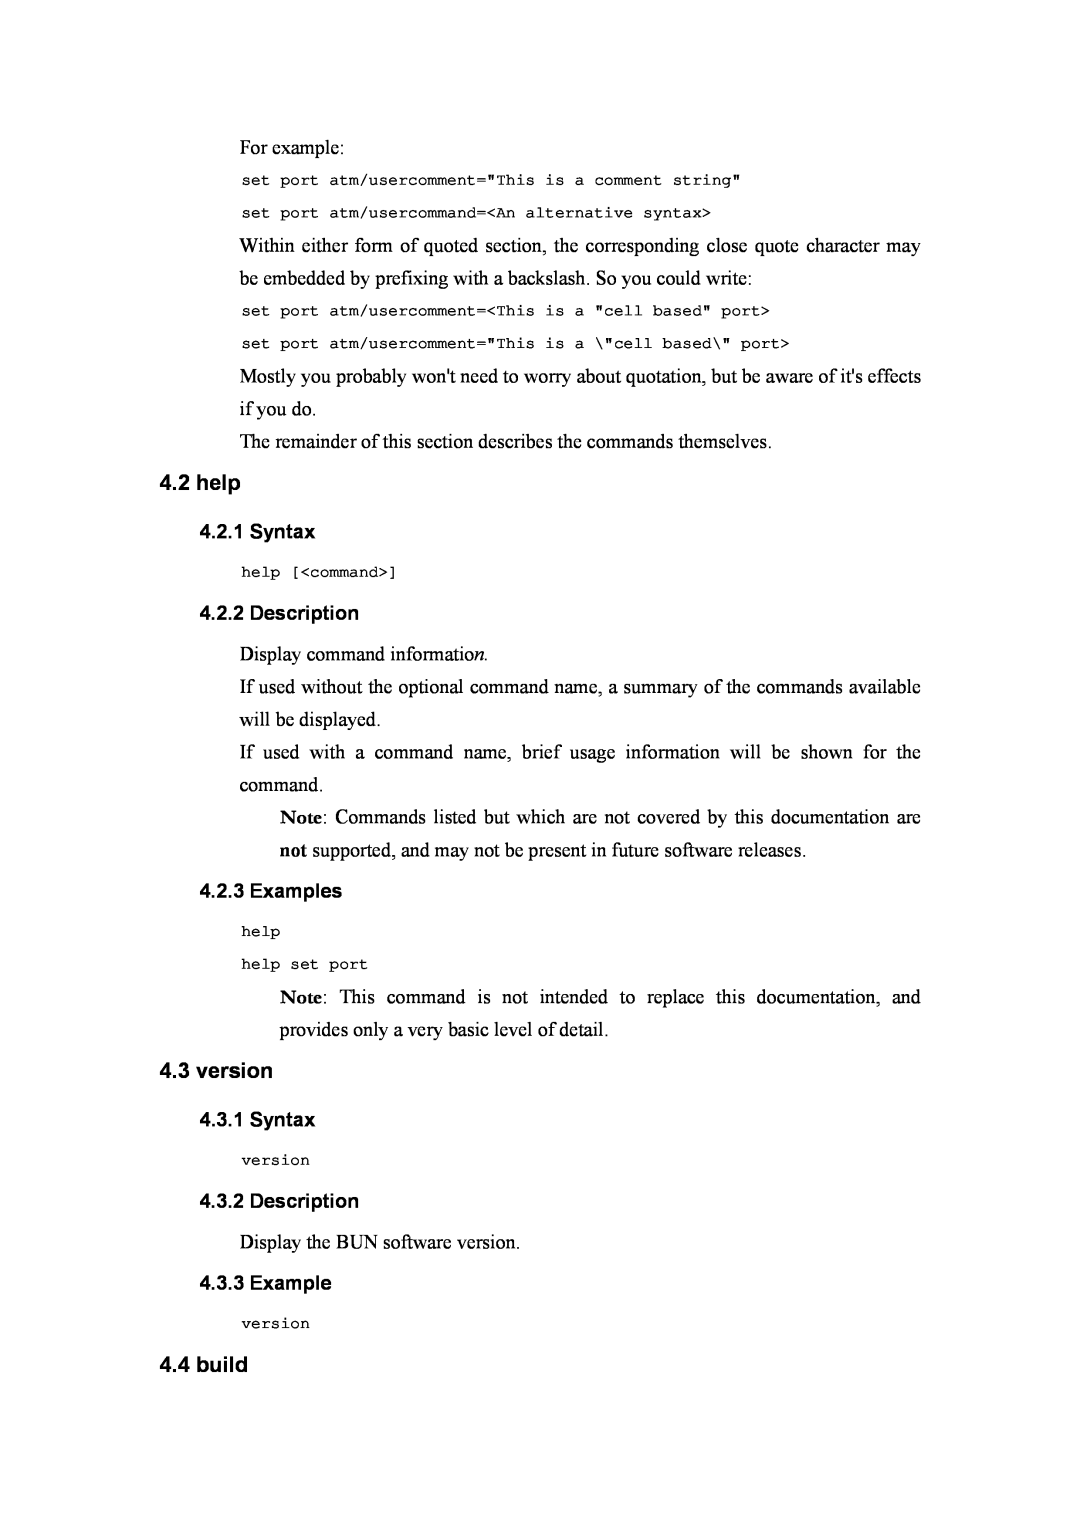 Atlantis Land A02-RA(Atmos)_ME01 manual help, version, build, Syntax, Description, Examples 